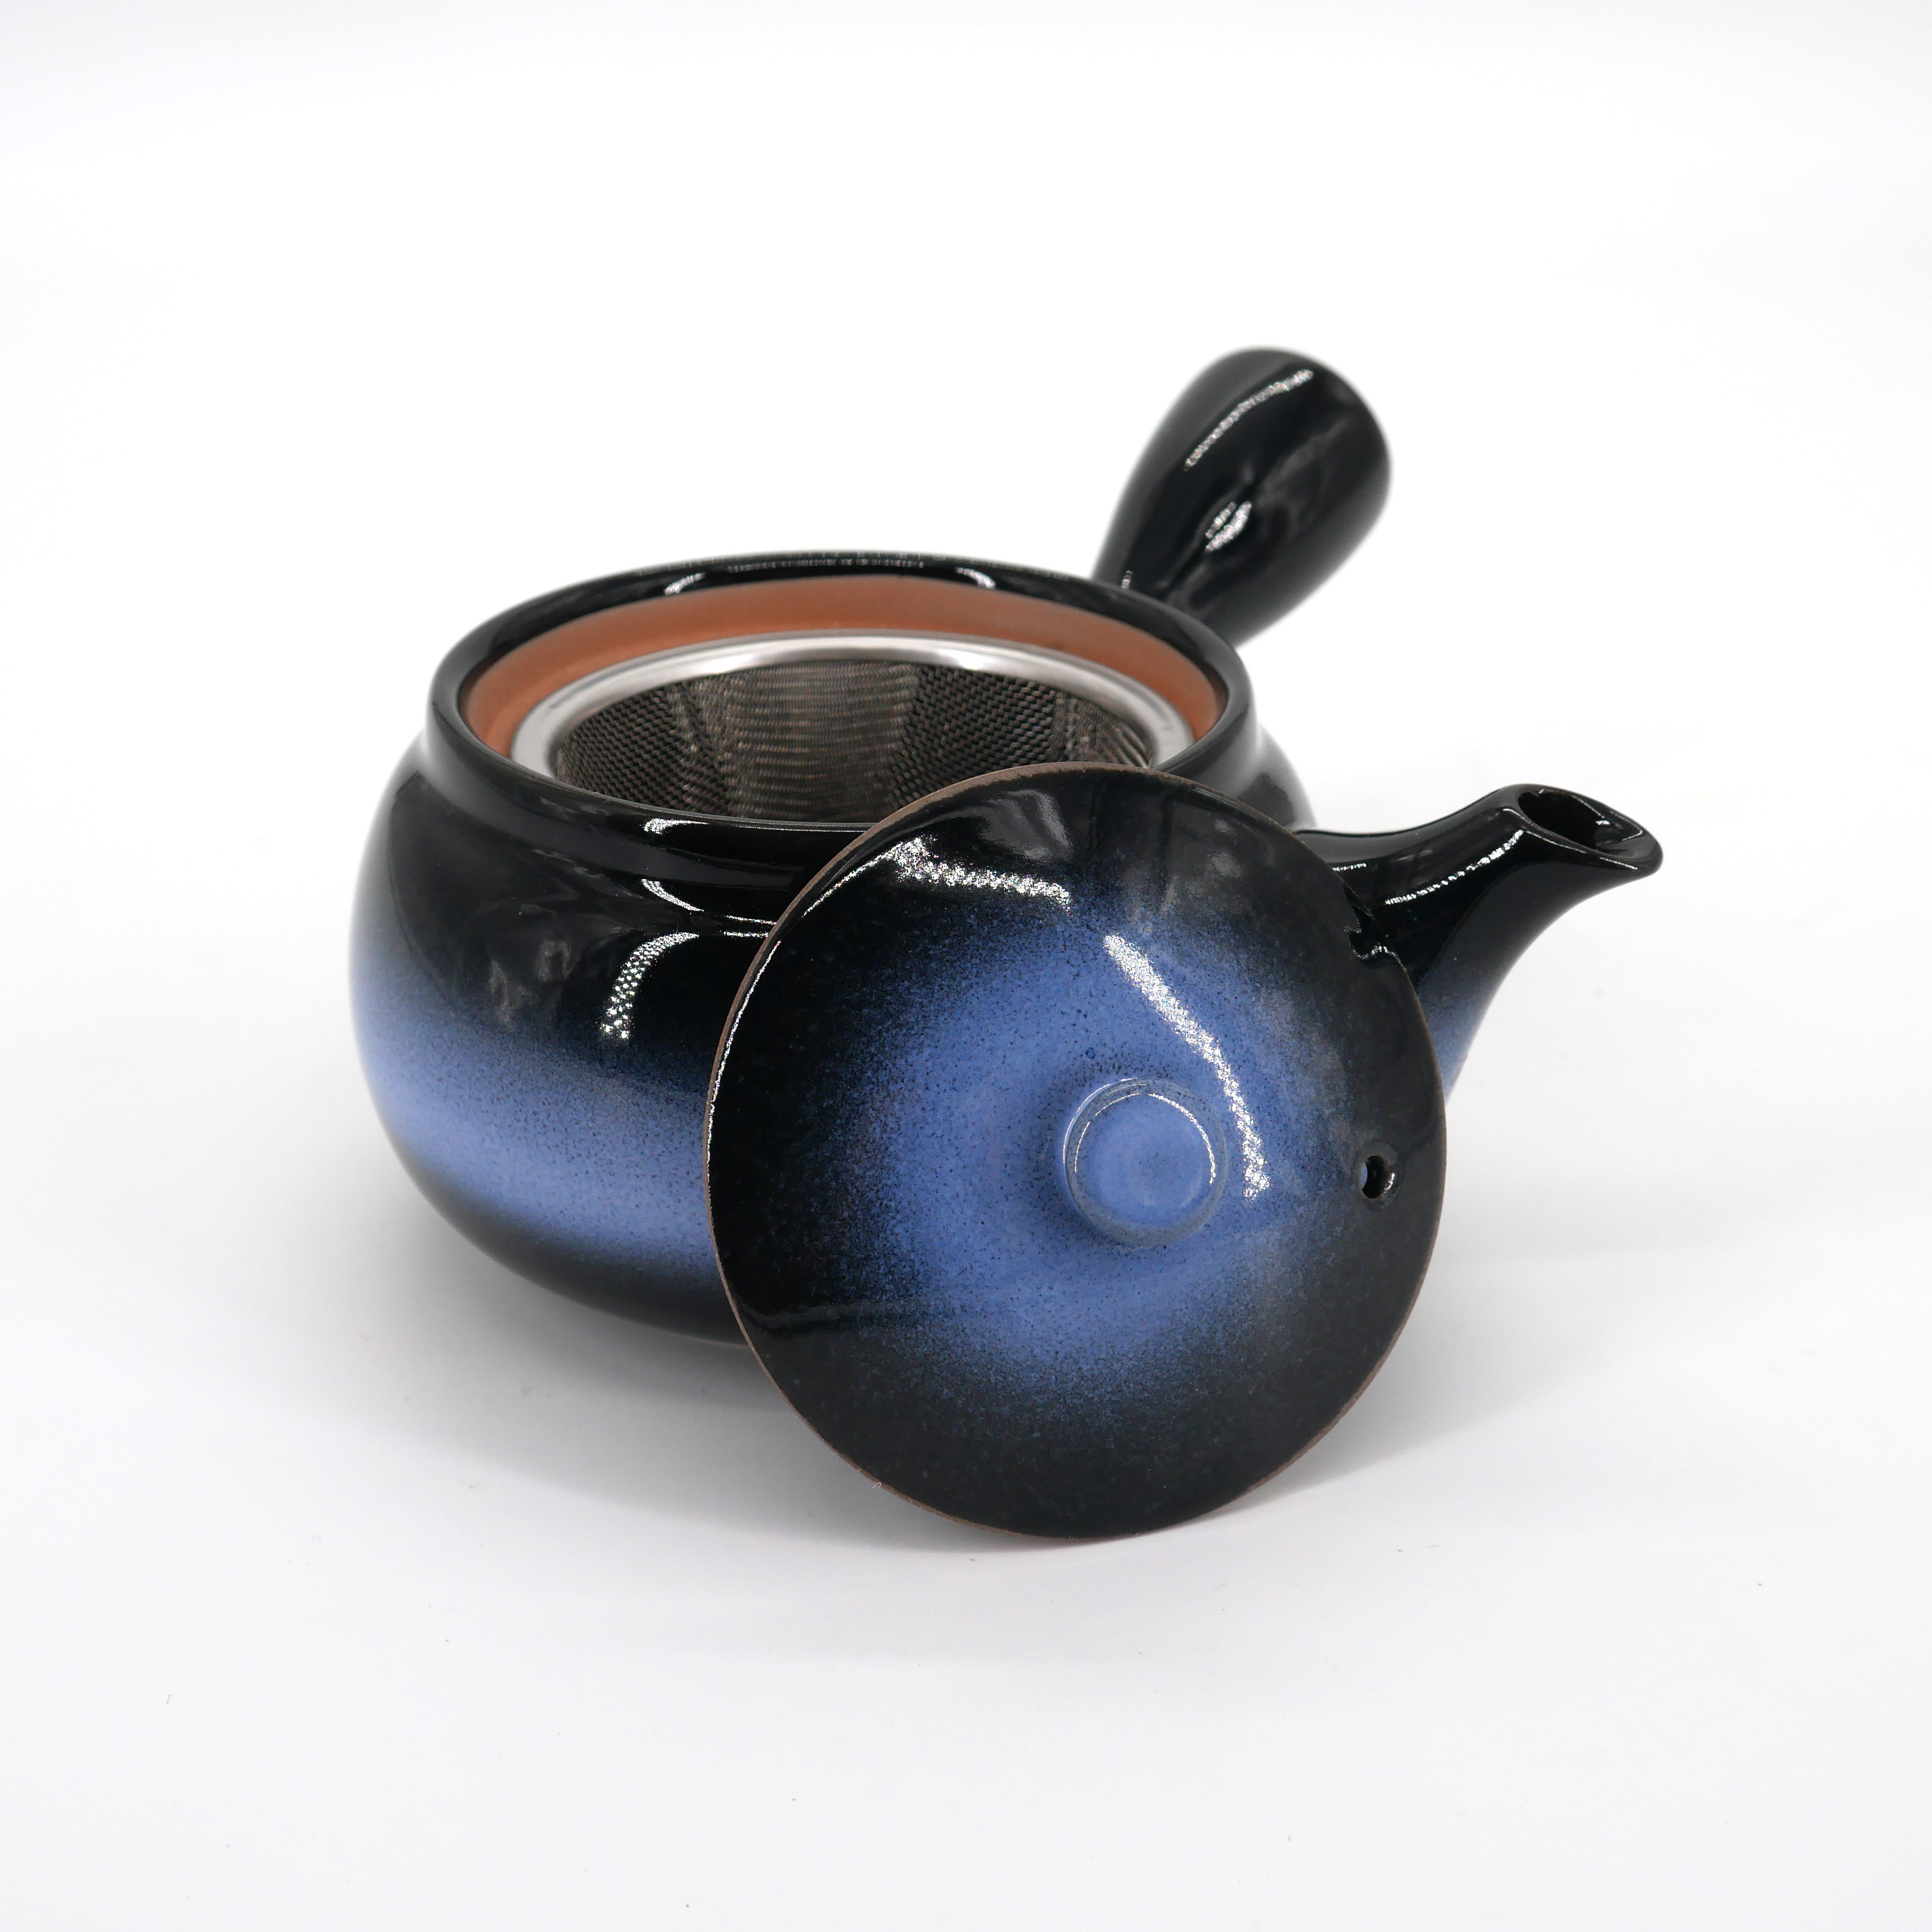 Autor fantasma Gasto tetera azul y negra kyusu japonesa en ceramica AOKURO